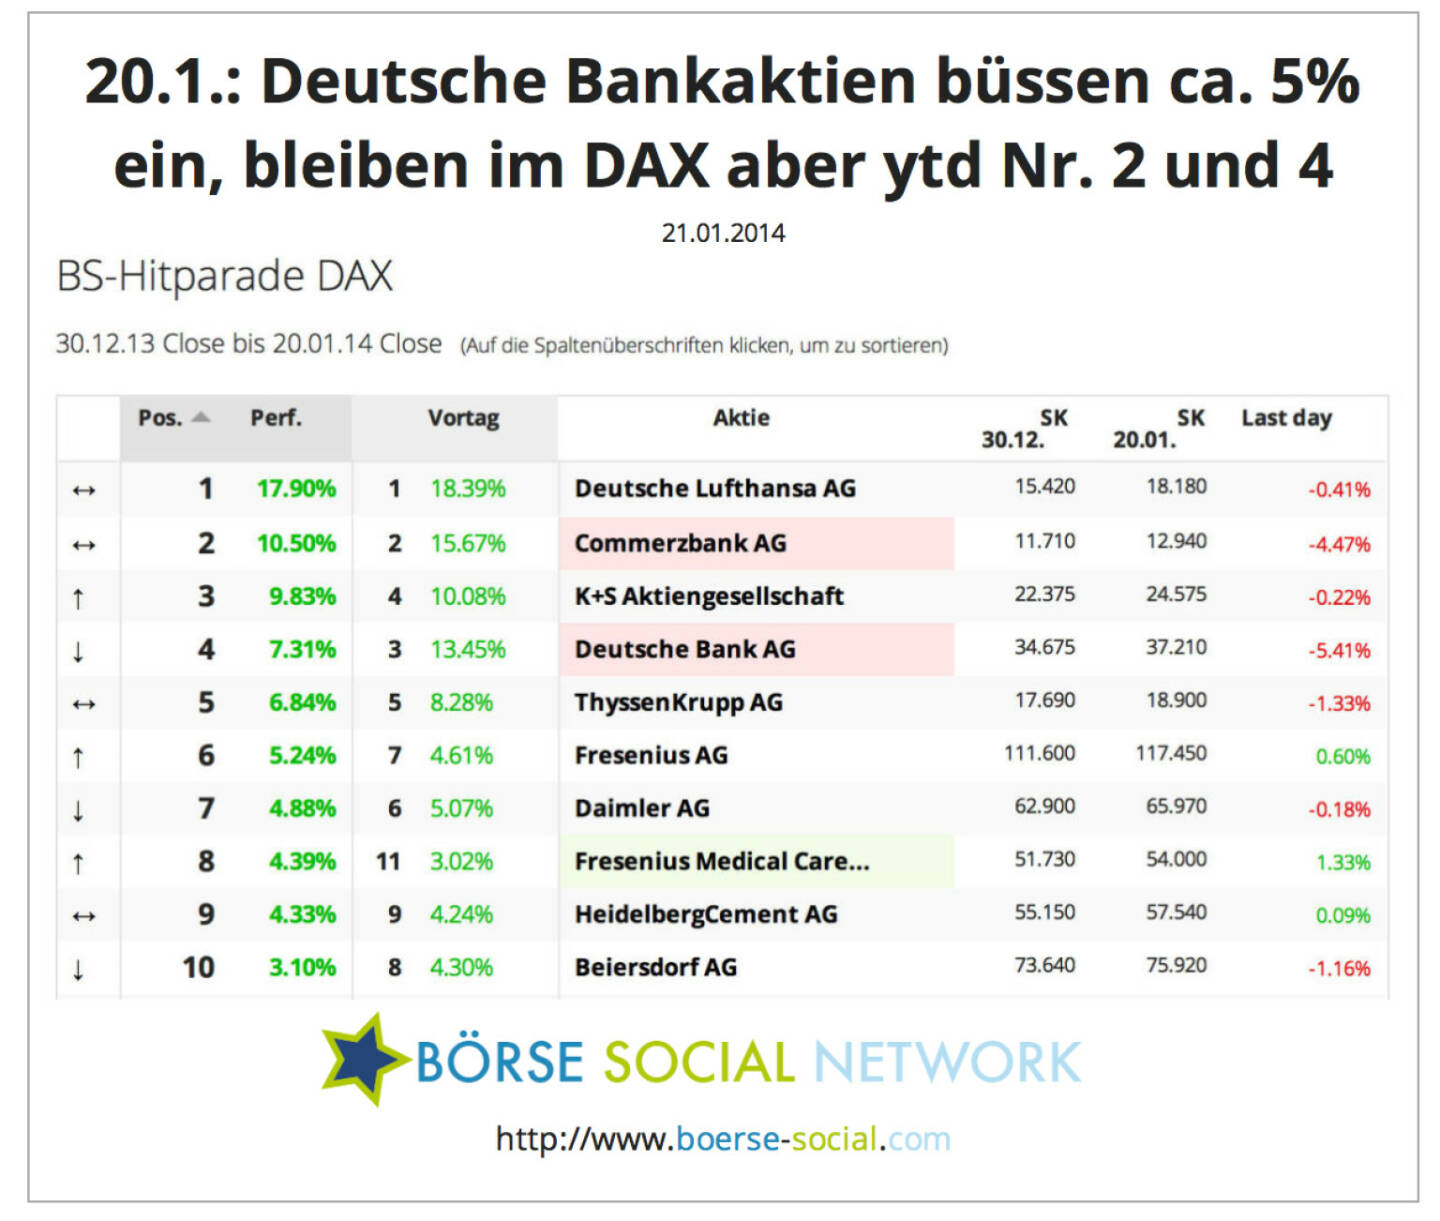 Commerzbank, Deutsche Bank verlieren stark, bleiben aber year-to-date vorne dabei http://boerse-social.com/launch/performance/dax